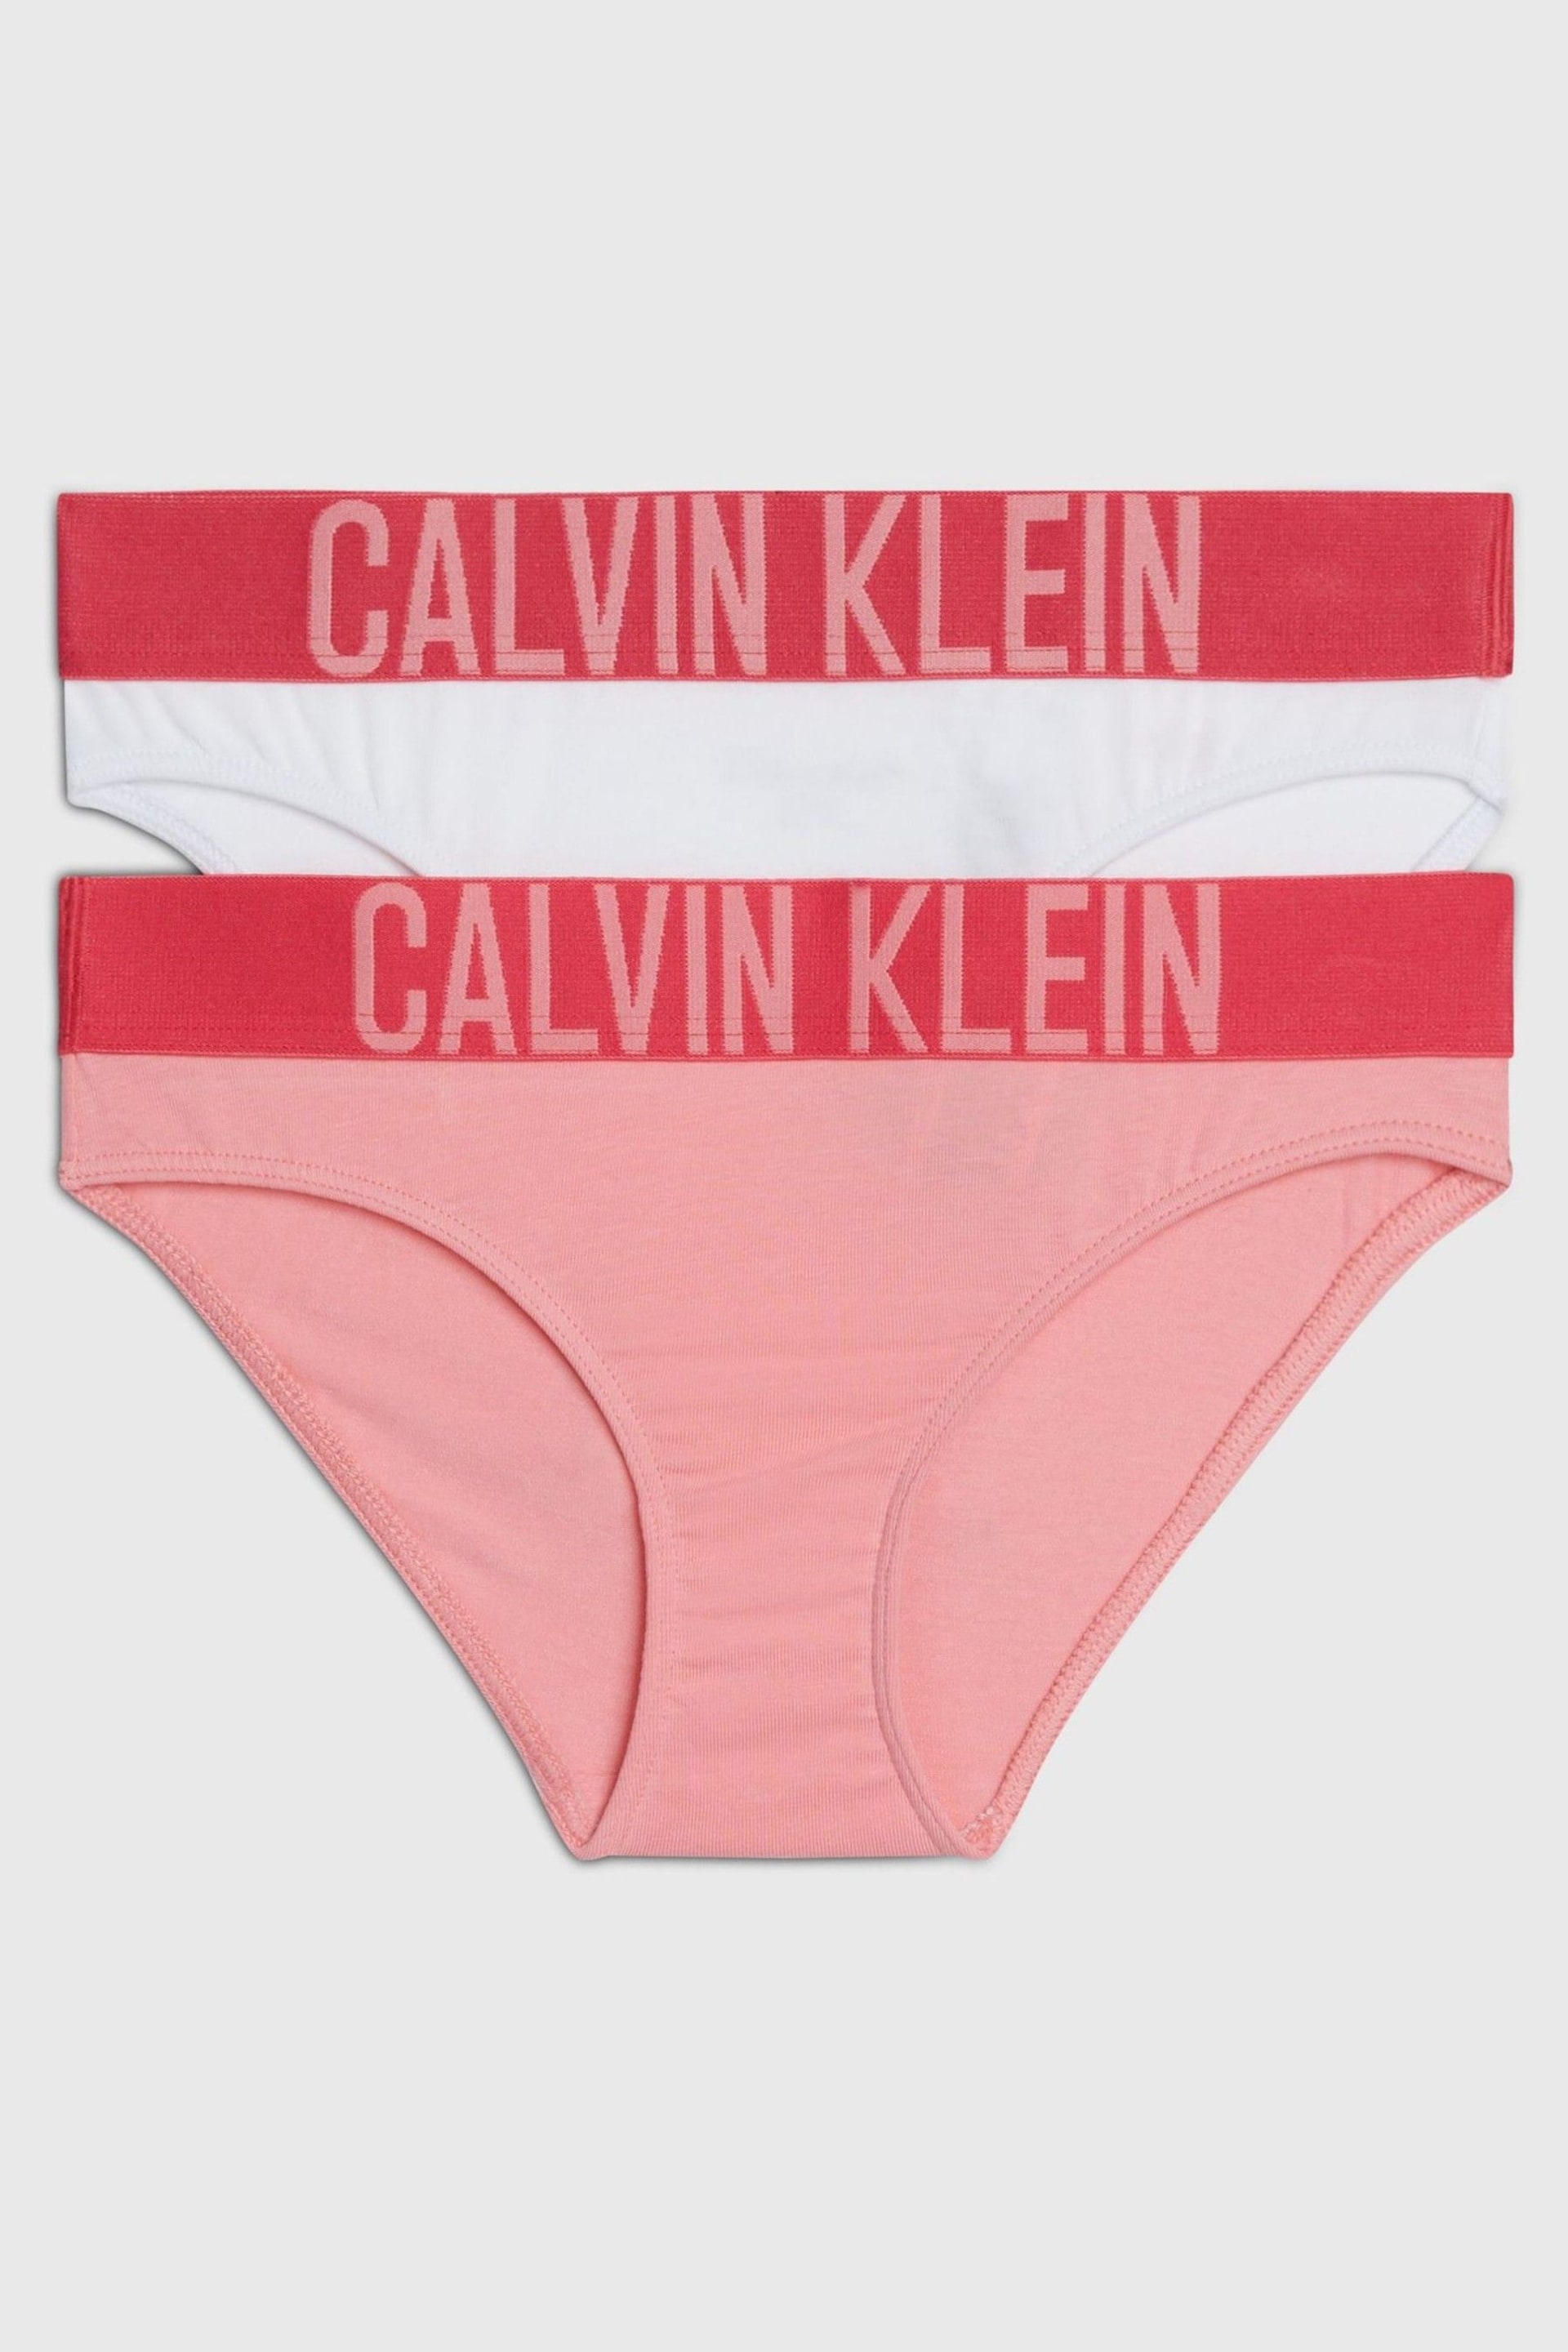 Calvin Klein Pink Underwear Bikini Briefs 2 Pack - Image 1 of 2